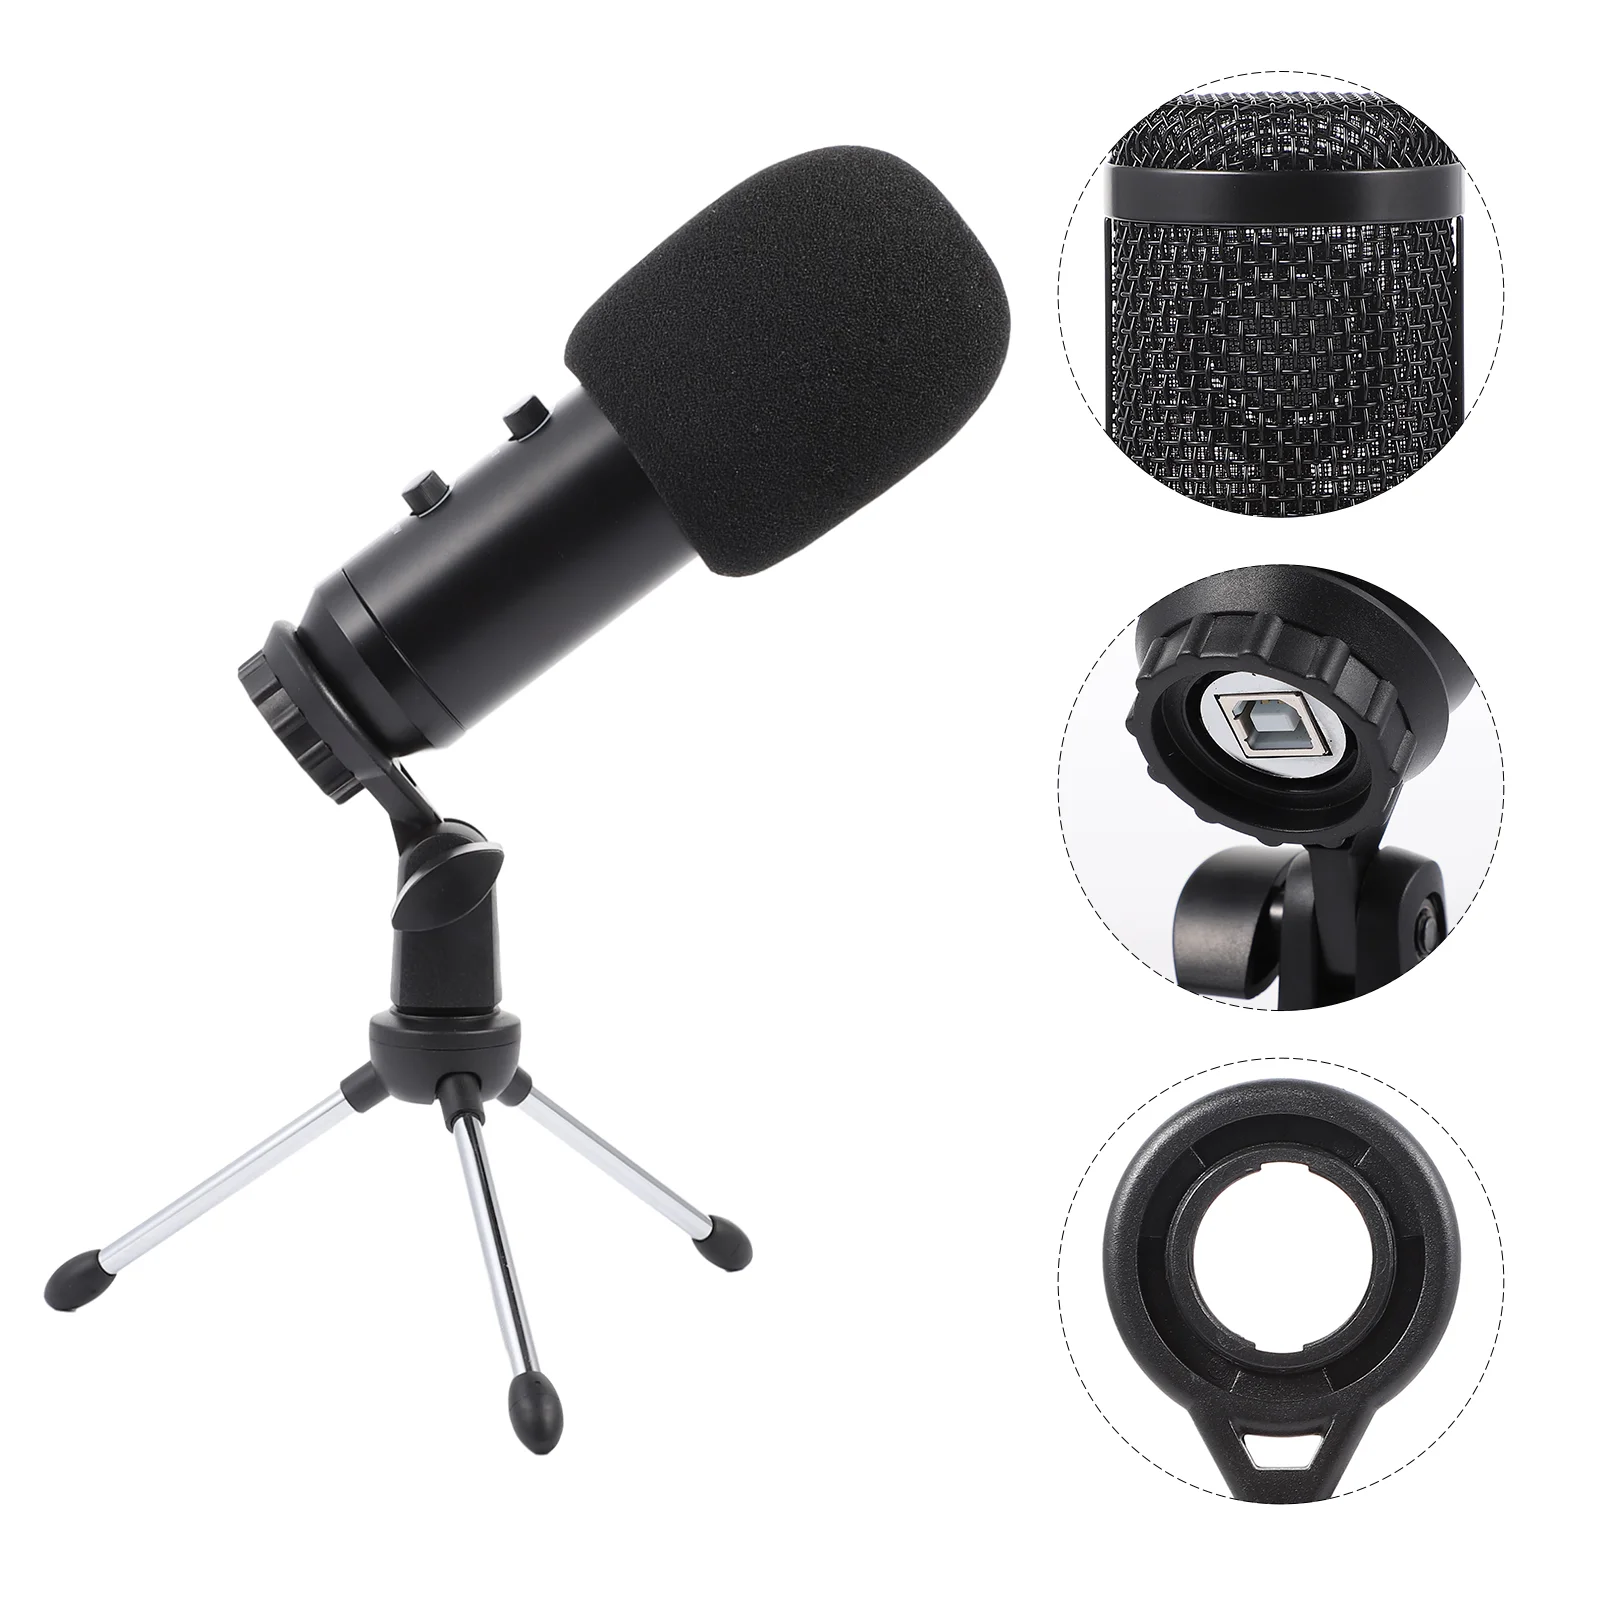 

1 Набор для студийной записи, встроенный микрофон для прямой трансляции в черном цвете